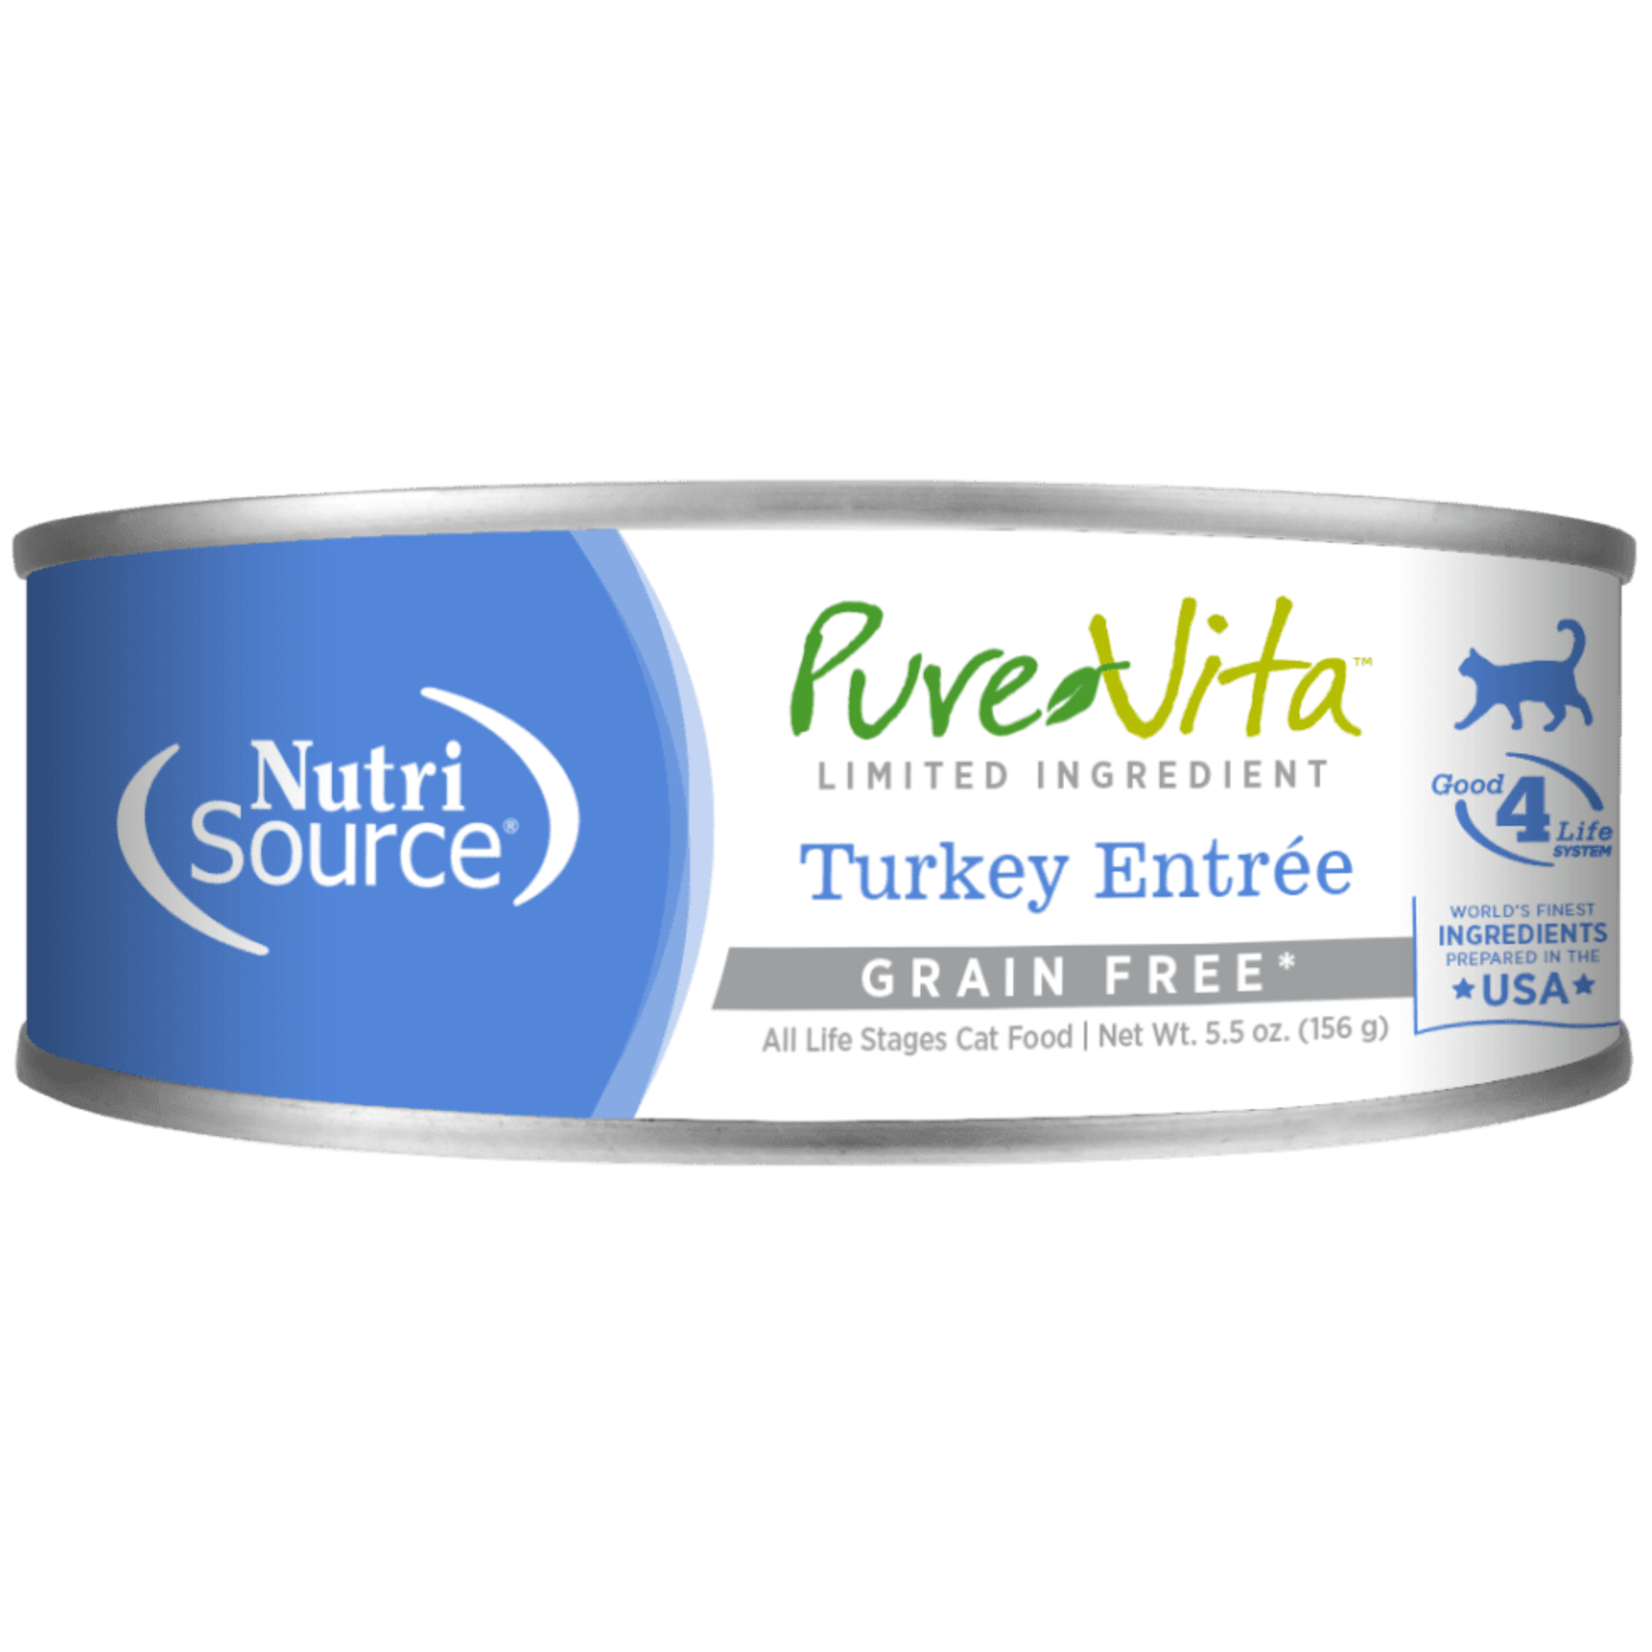 NutriSource NutriSource Pure Vita - Grain Free Turkey Entrée for Cats